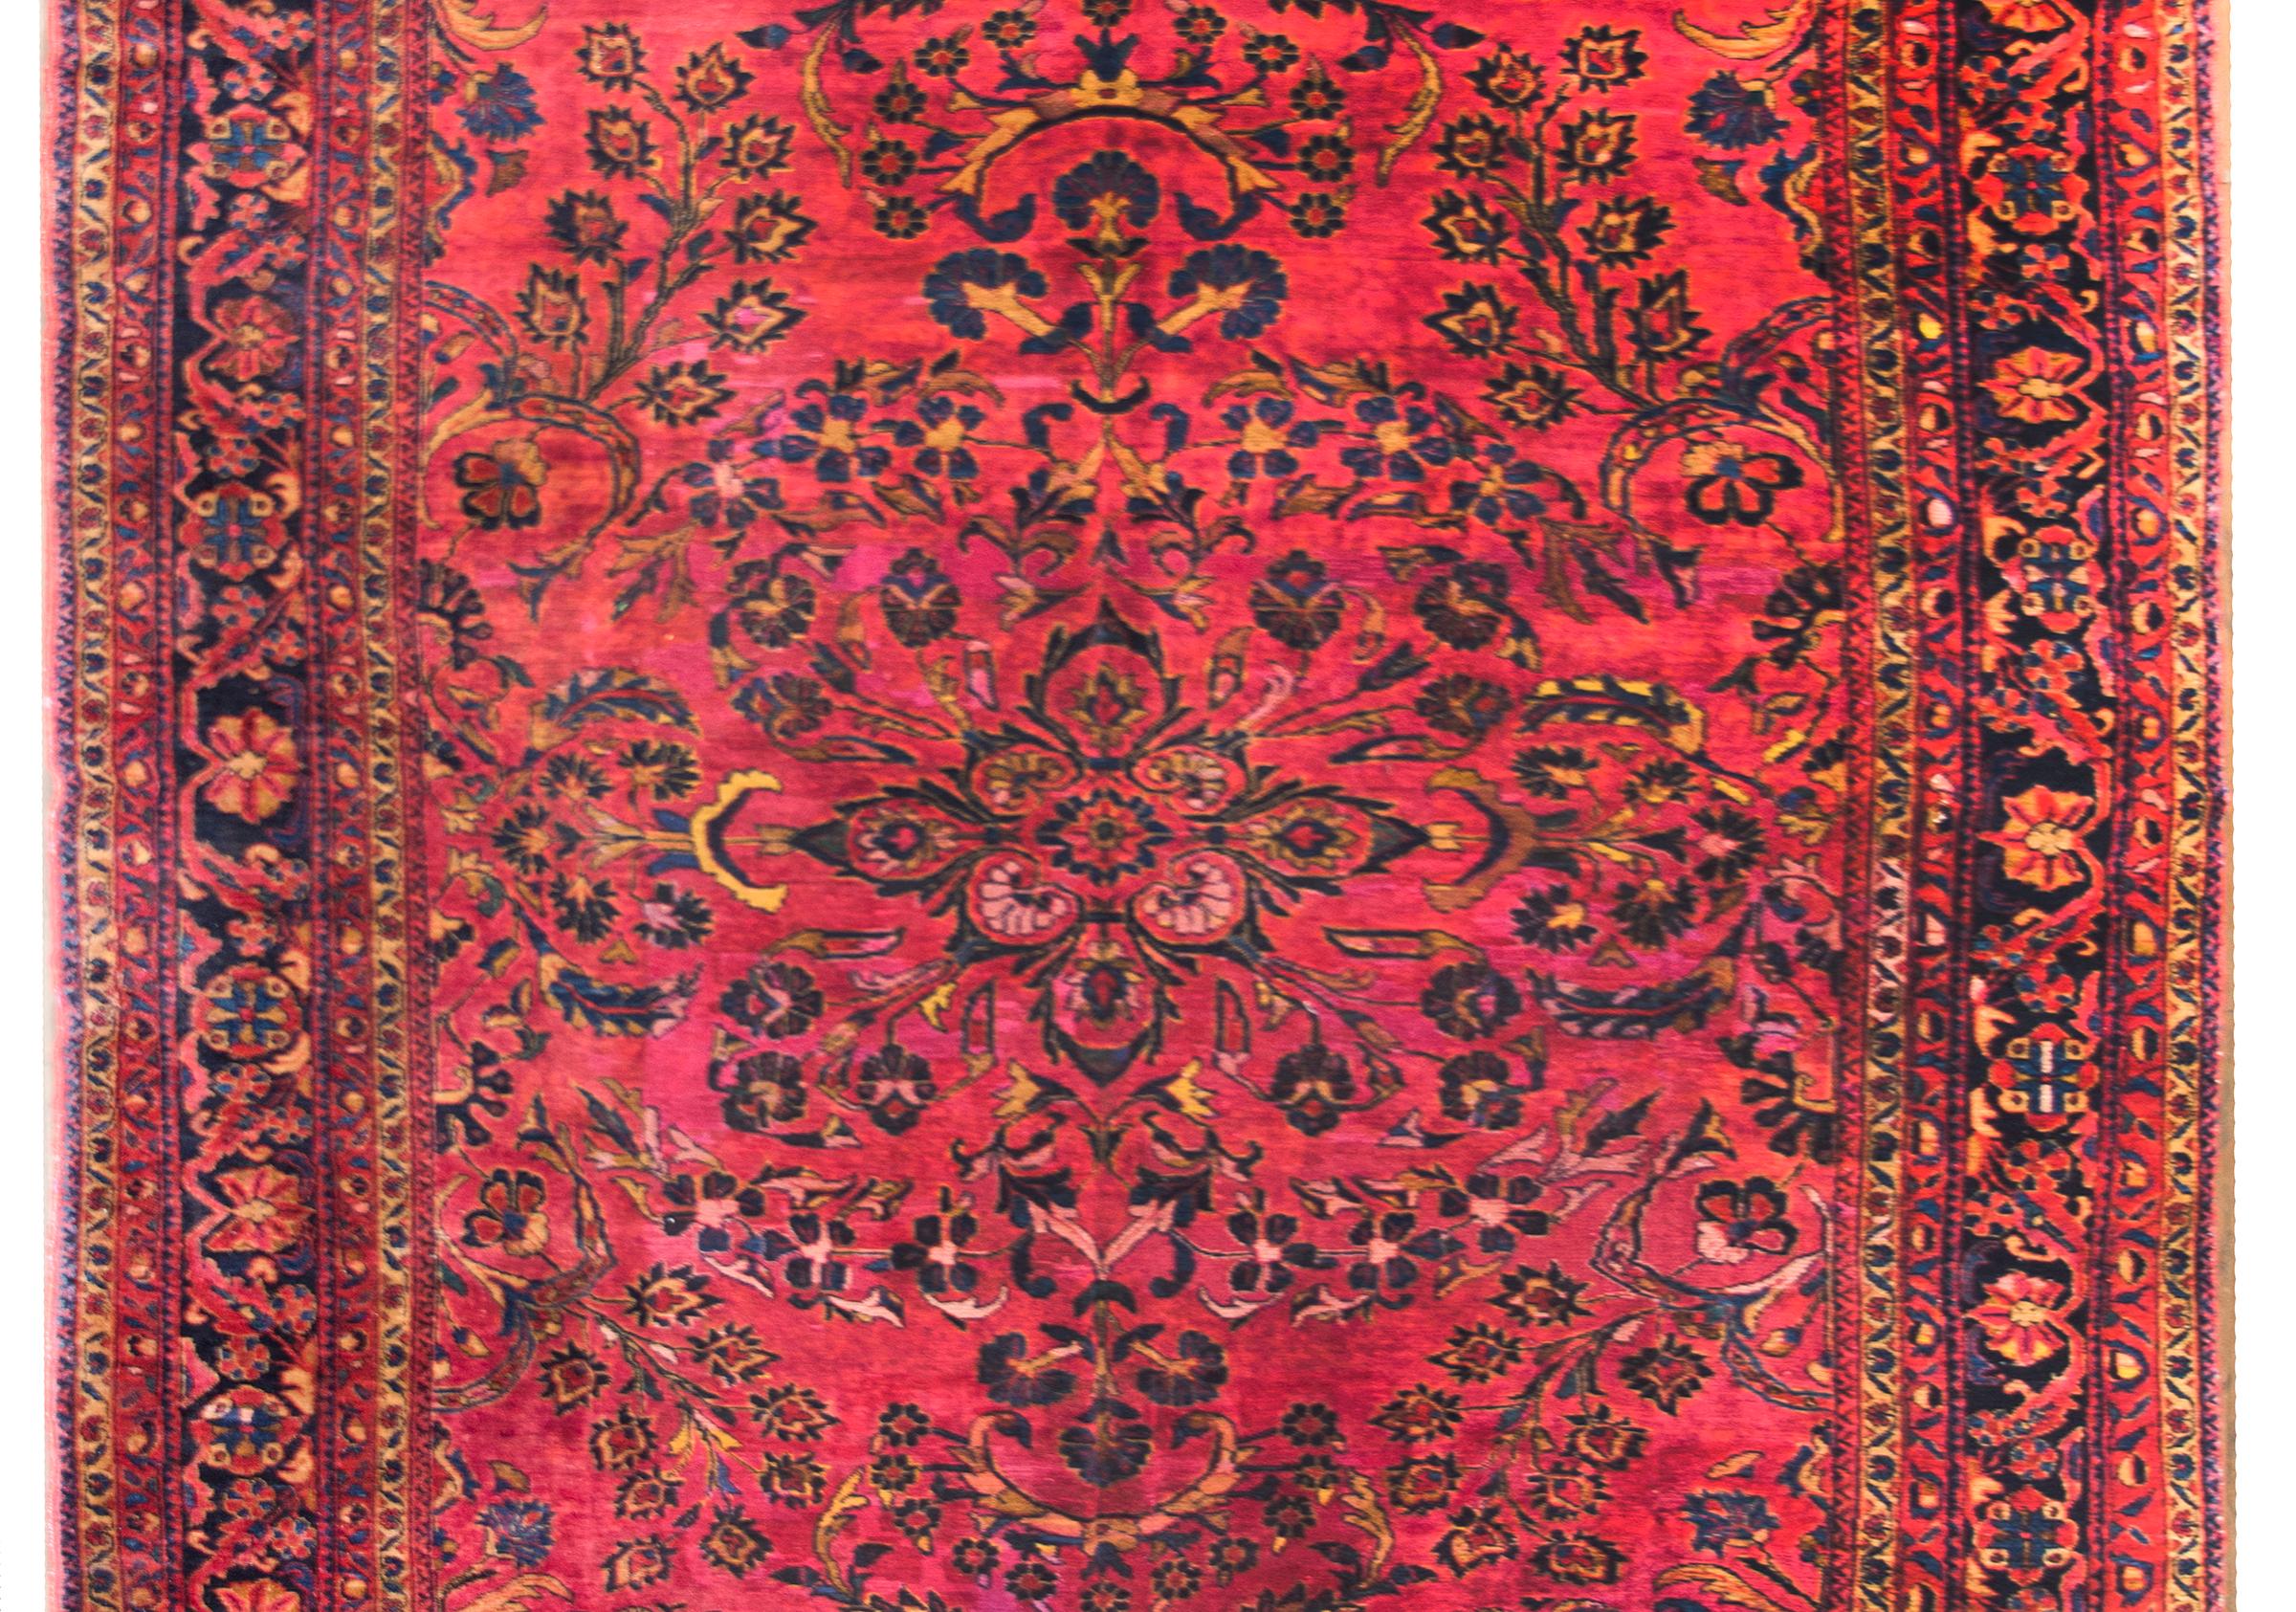 Ein wunderschöner persischer Lilihan-Teppich aus dem frühen 20. Jahrhundert mit einem zentralen Blumenmedaillon inmitten eines Feldes mit weiteren Blumen und Ranken, umgeben von einer komplexen Bordüre mit einem zentralen, sich wiederholenden,